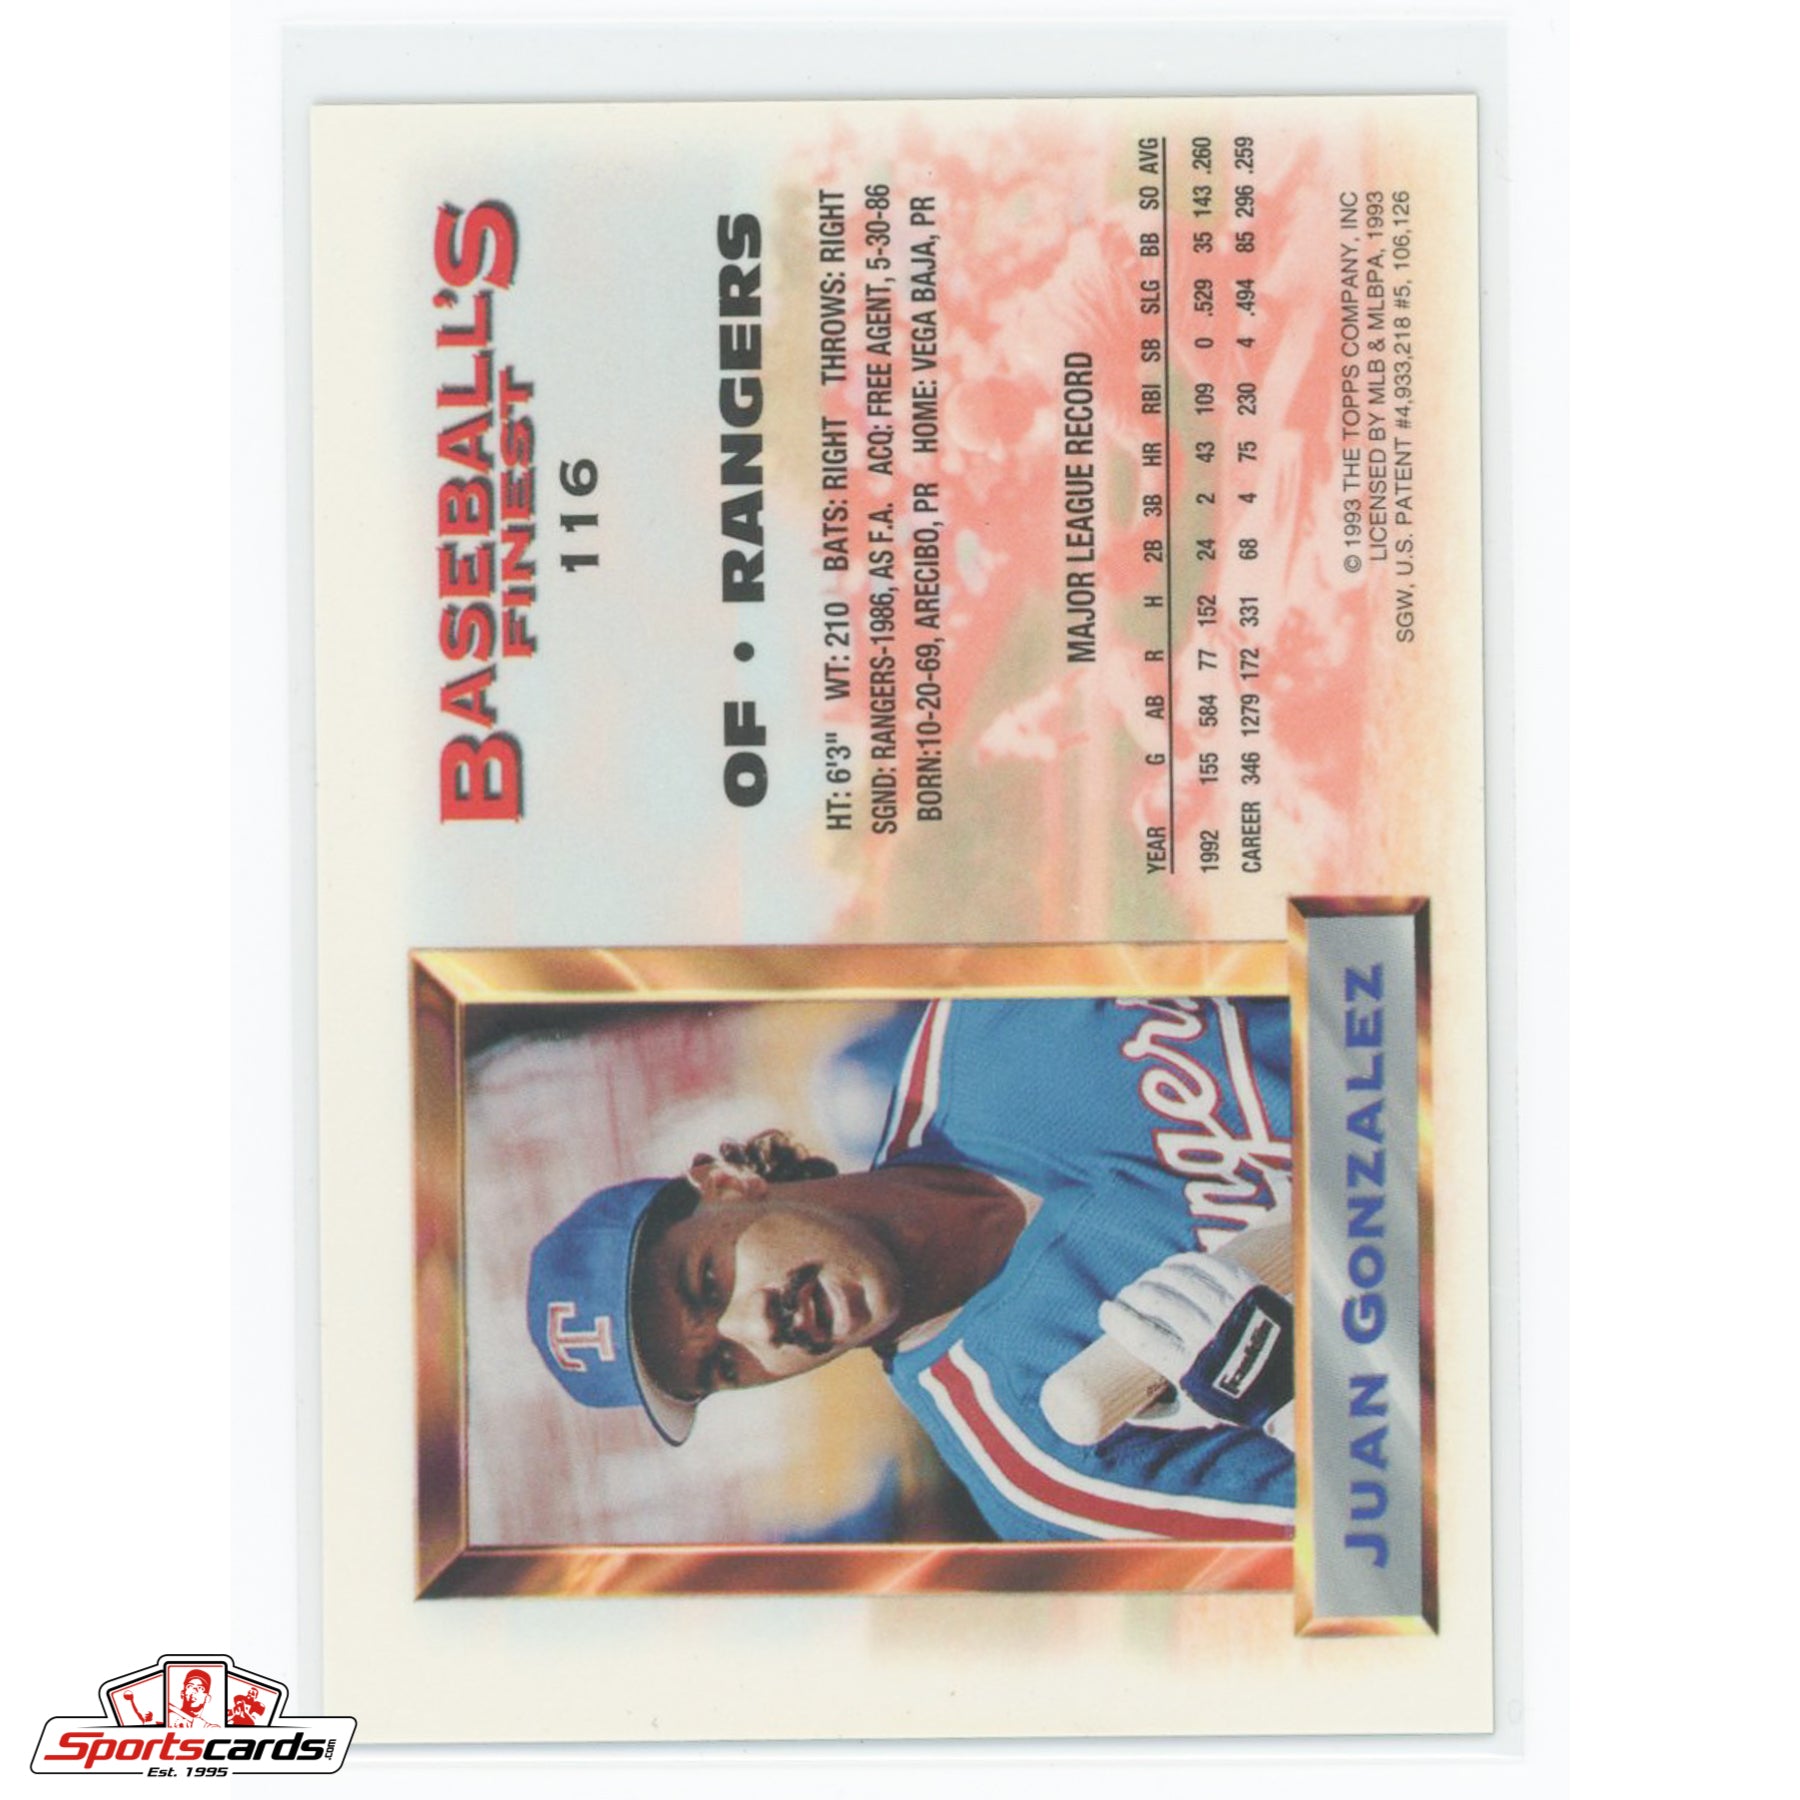 1993 Finest Juan Gonzalez Refractor #116 Texas Rangers